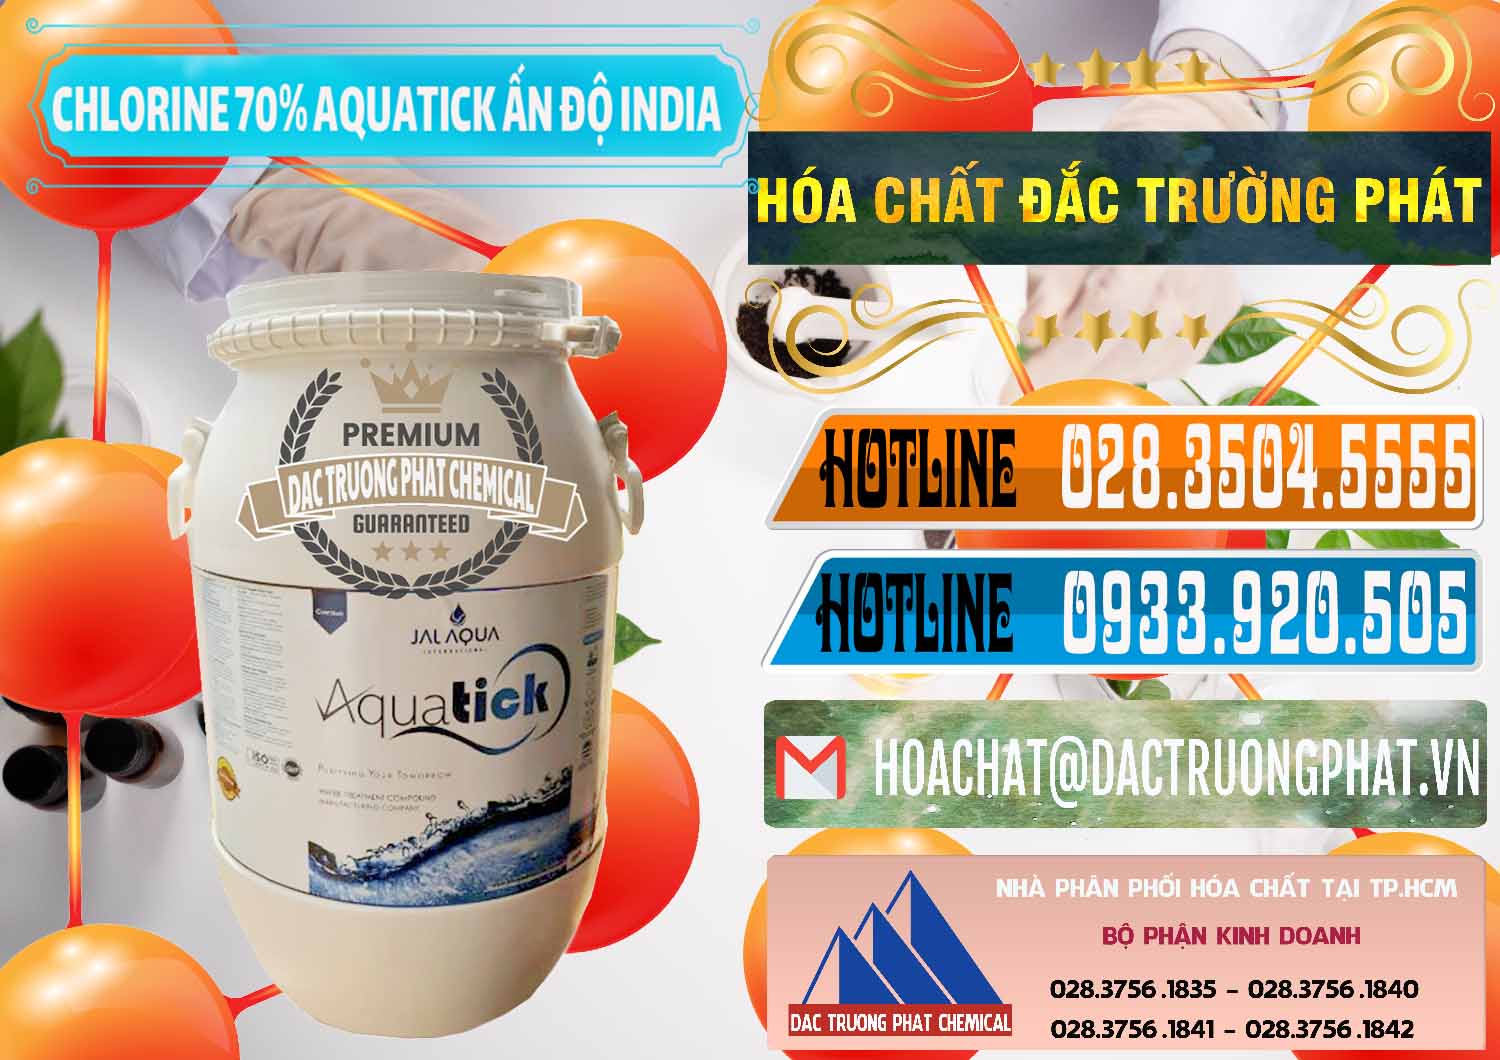 Cty kinh doanh _ bán Chlorine – Clorin 70% Aquatick Jal Aqua Ấn Độ India - 0215 - Đơn vị chuyên bán - cung cấp hóa chất tại TP.HCM - stmp.net